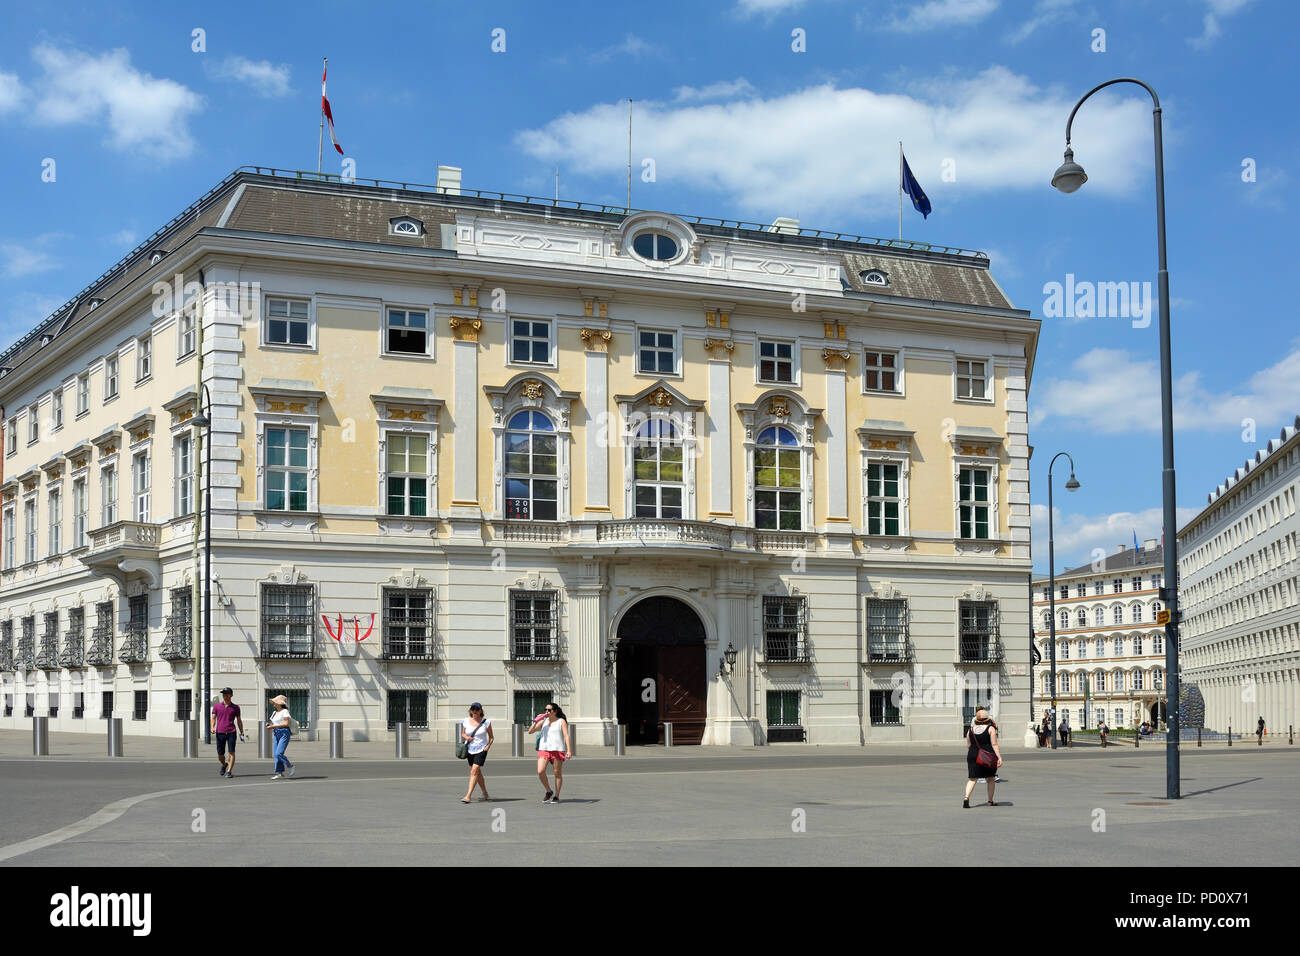 Bundeskanzleramt der Republik Österreich am Ballhausplatz in Wien - Österreich. Stockfoto